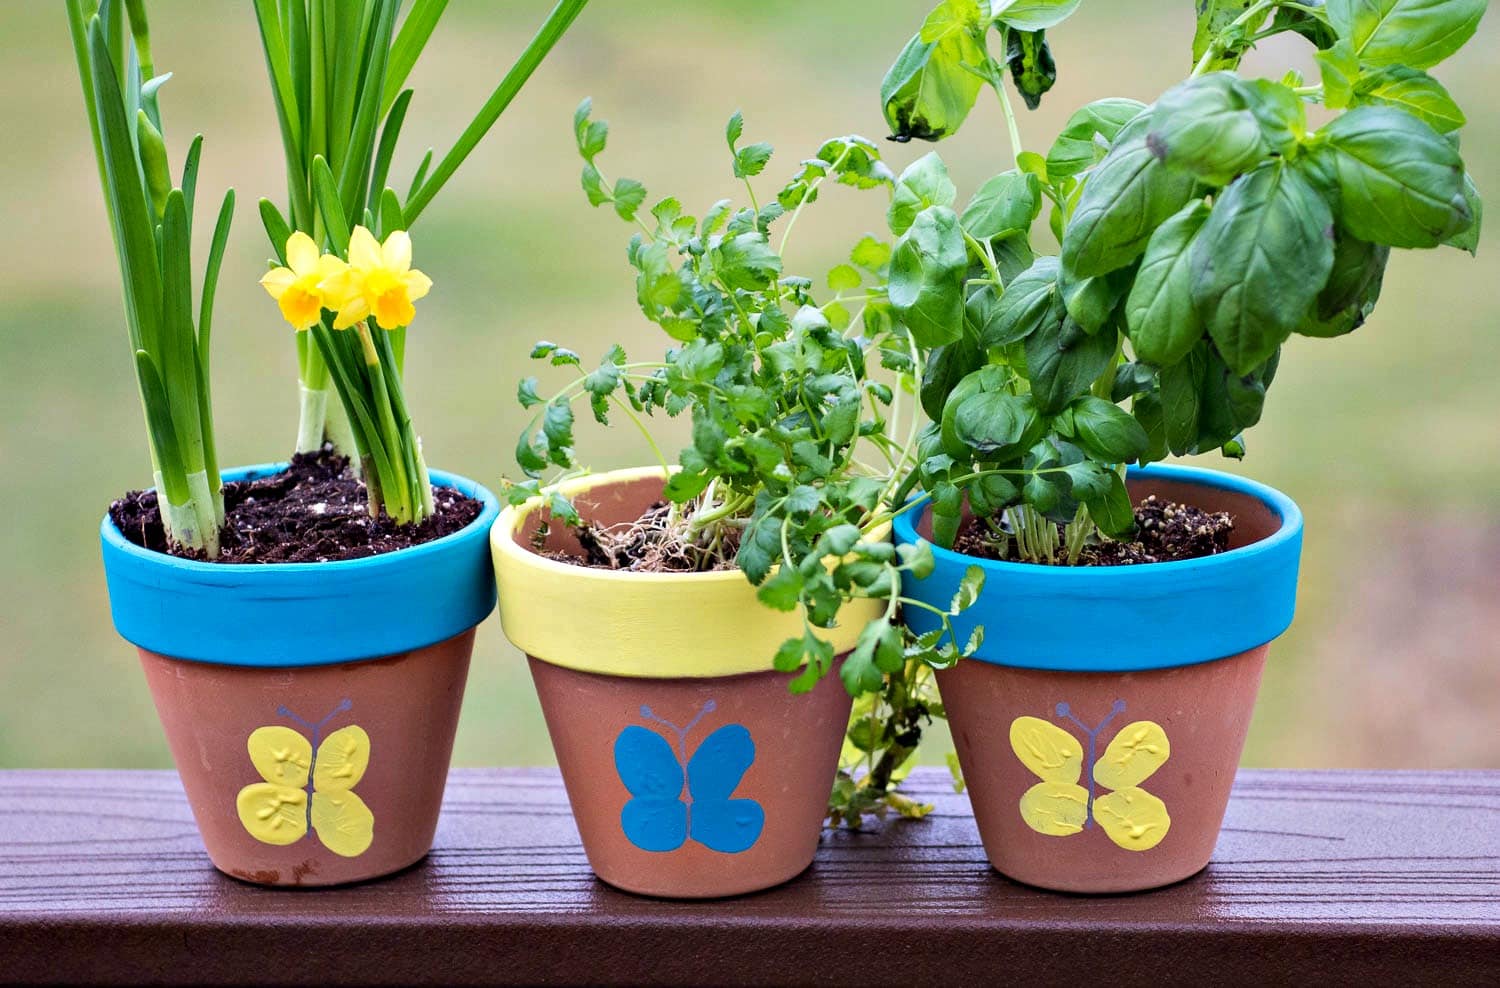 Thumbprint Flower Pots - make cute thumbprint butterflies on terracotta flower pots for an easy spring craft